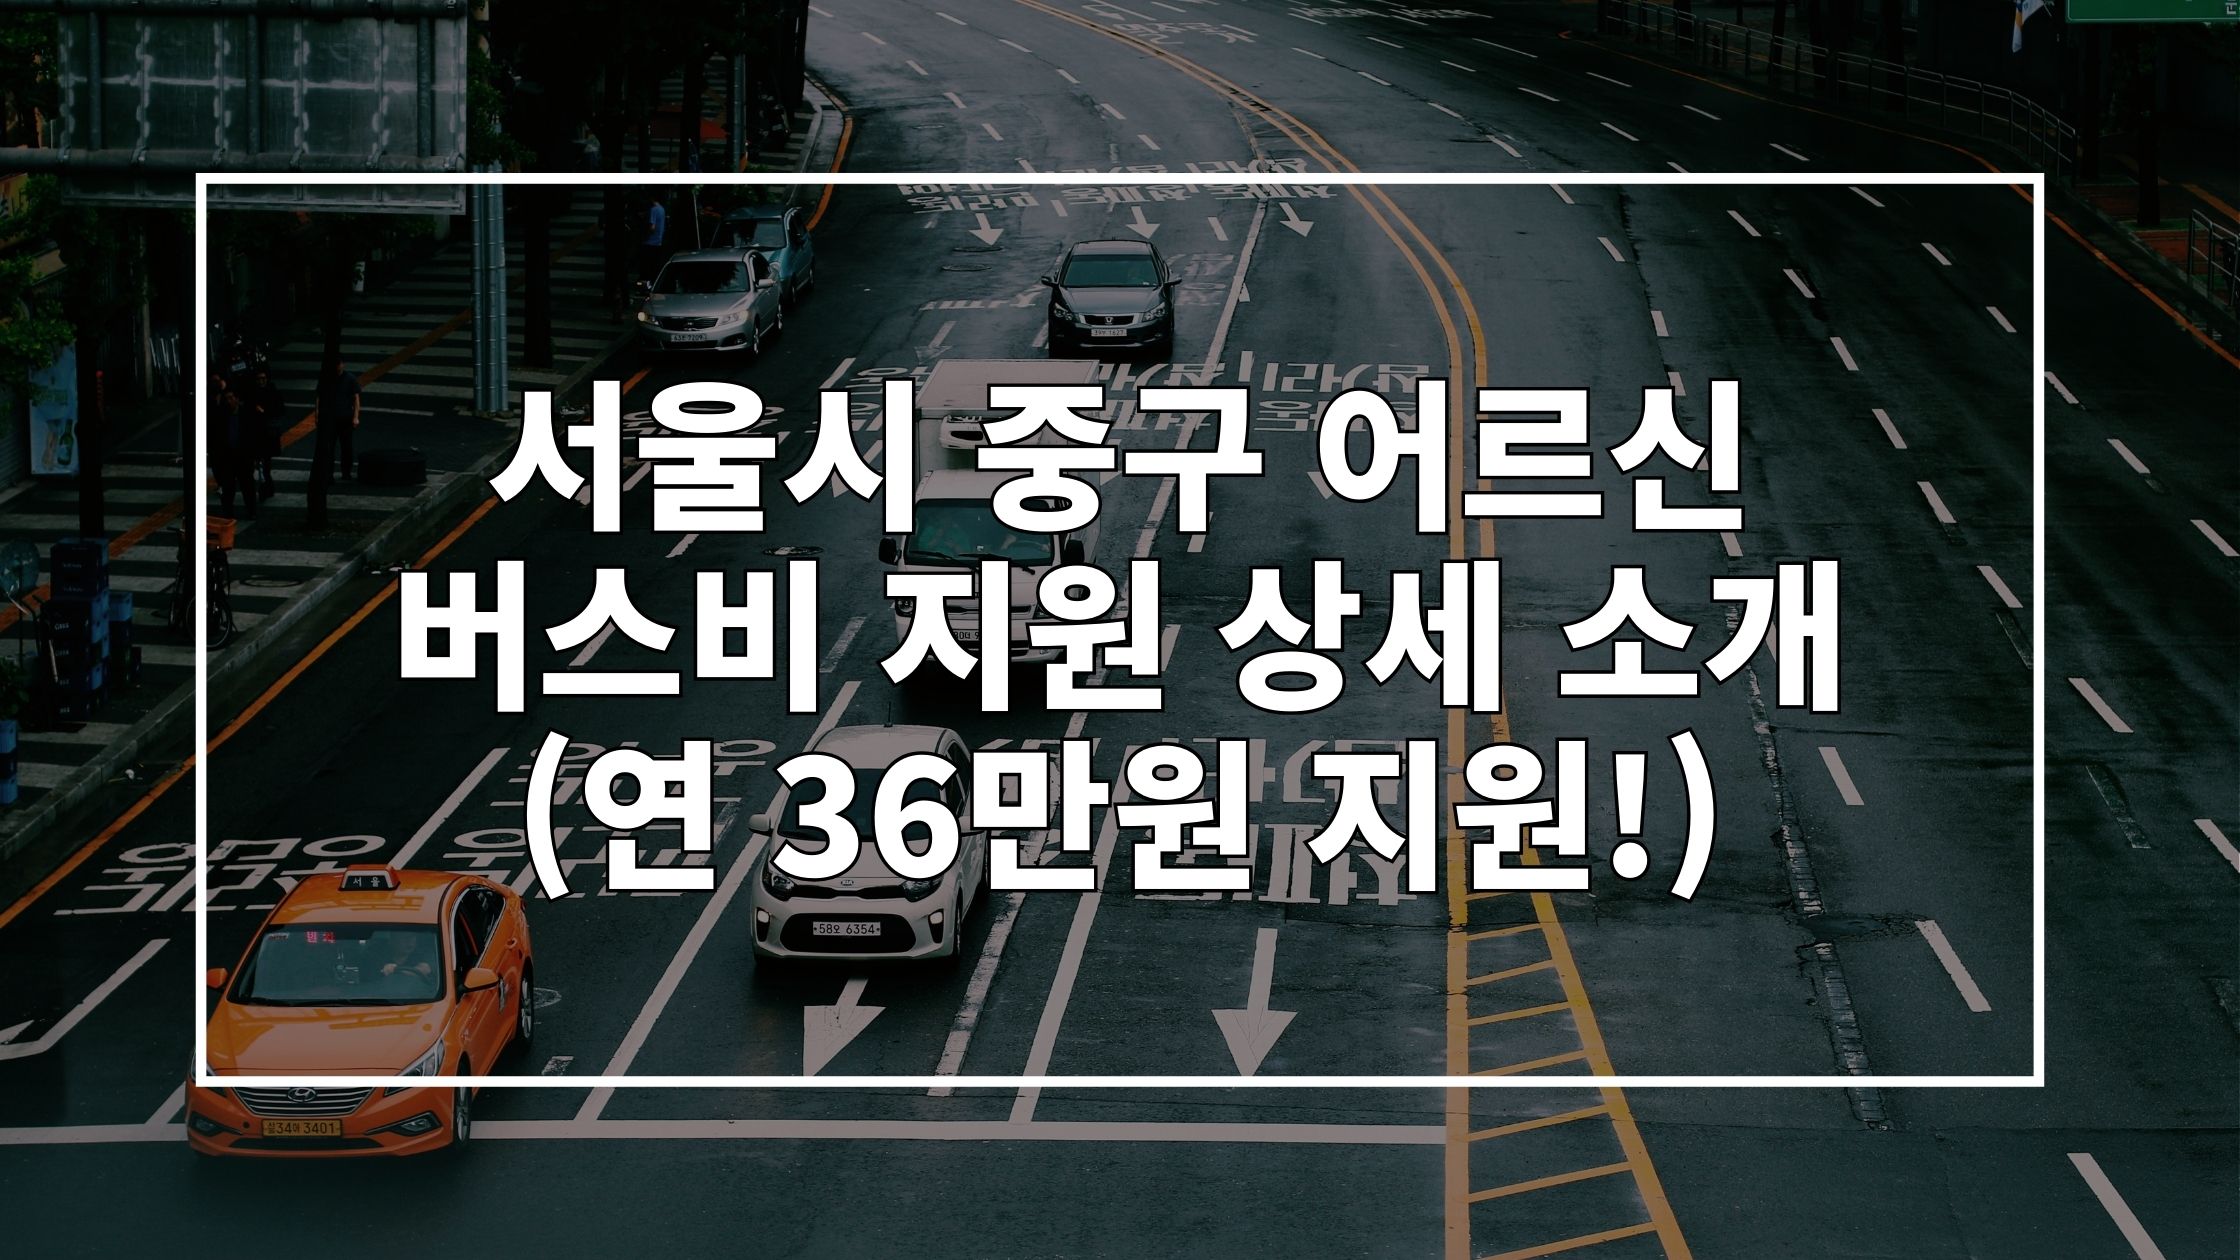 도로 위에 '서울시 중구 어르신 버스비 지원 상세 소개'라고 쓰인 썸네일 이미지입니다.